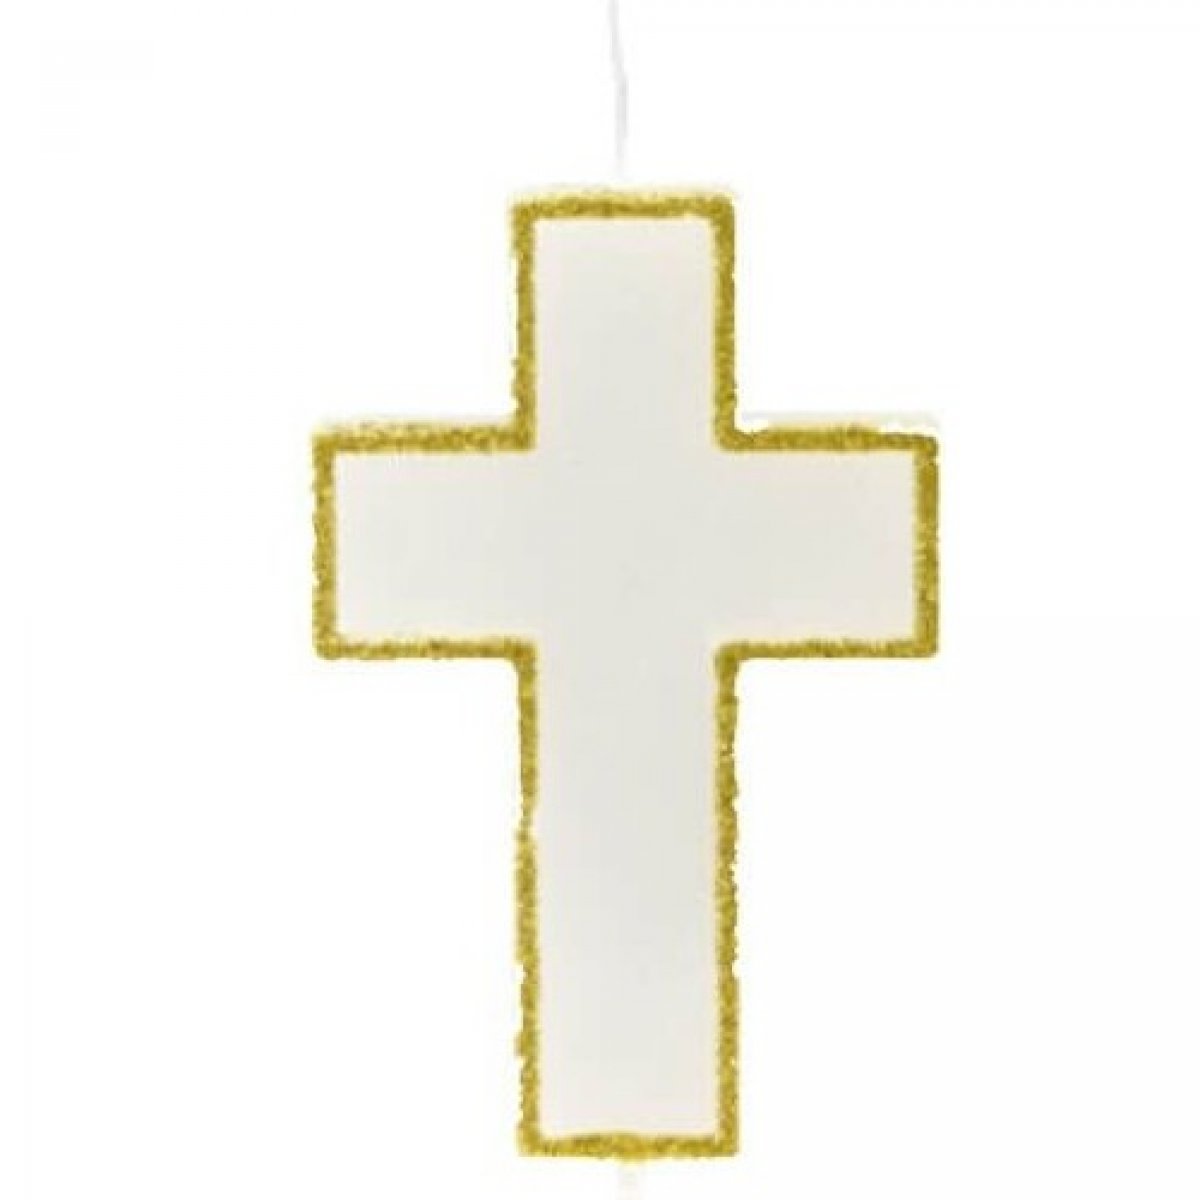 Bougie communion en forme de croix pailletée or